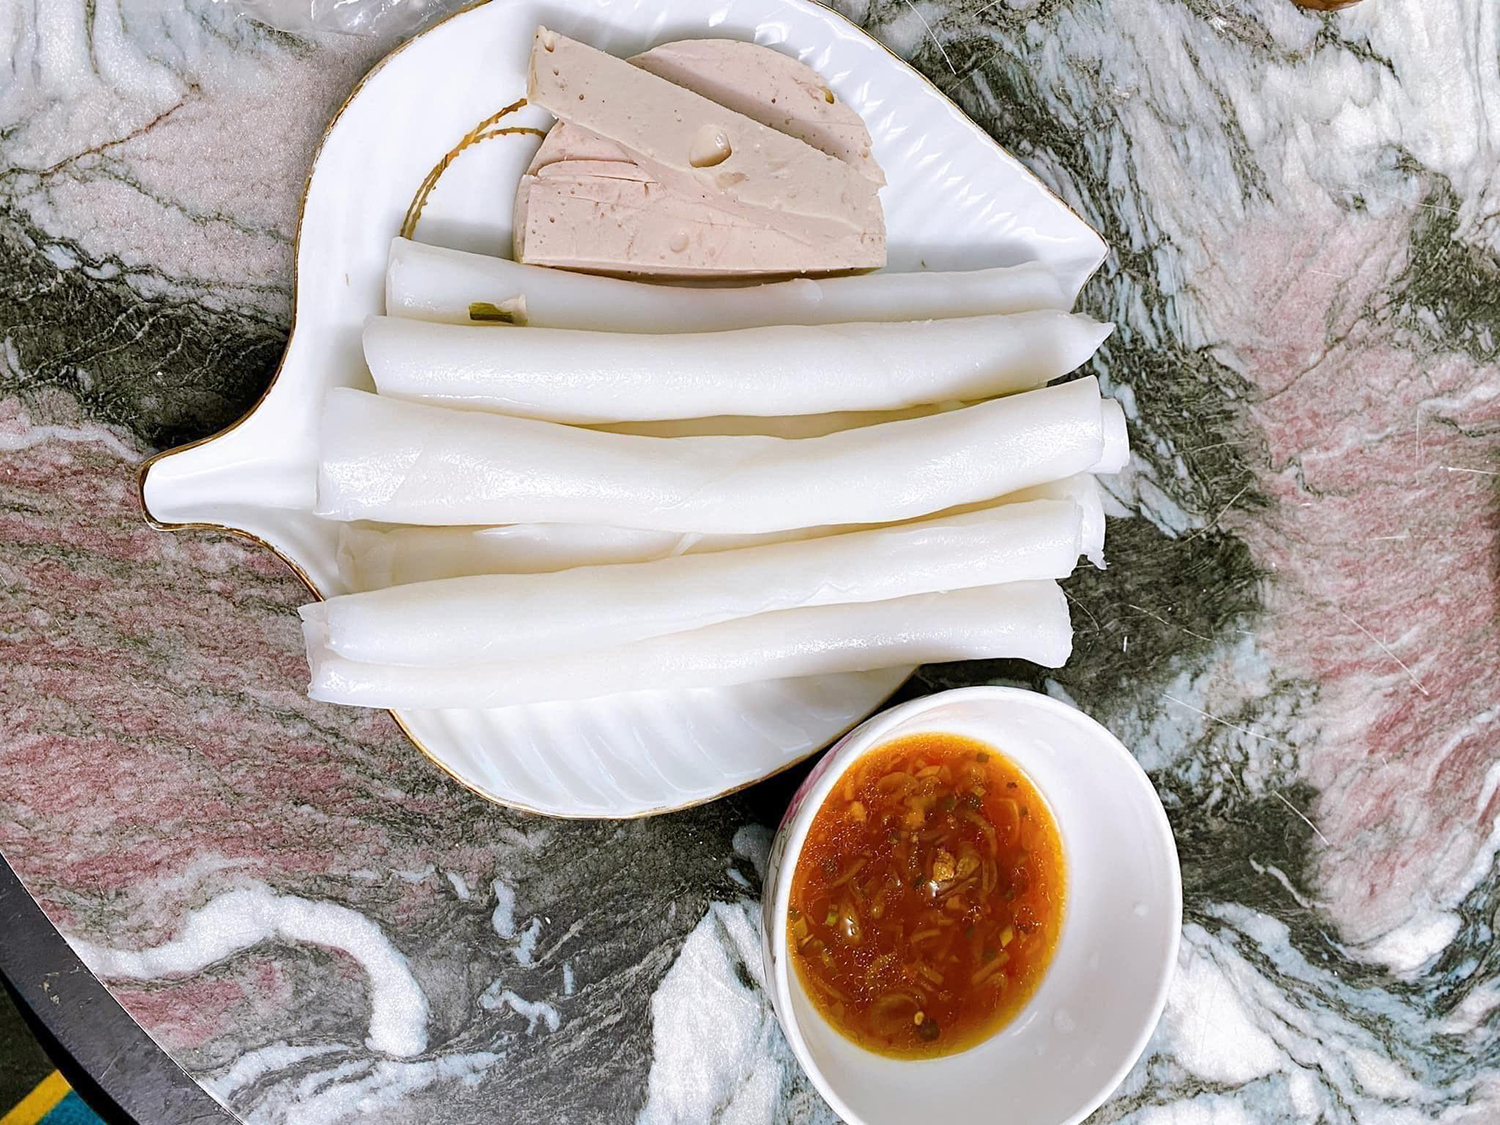 Ở Quảng Ninh có đặc sản bánh gật gù độc lạ, ăn theo cân rồi cứ gật gà gật gù tấm tắc khen ngon - Ảnh 1.